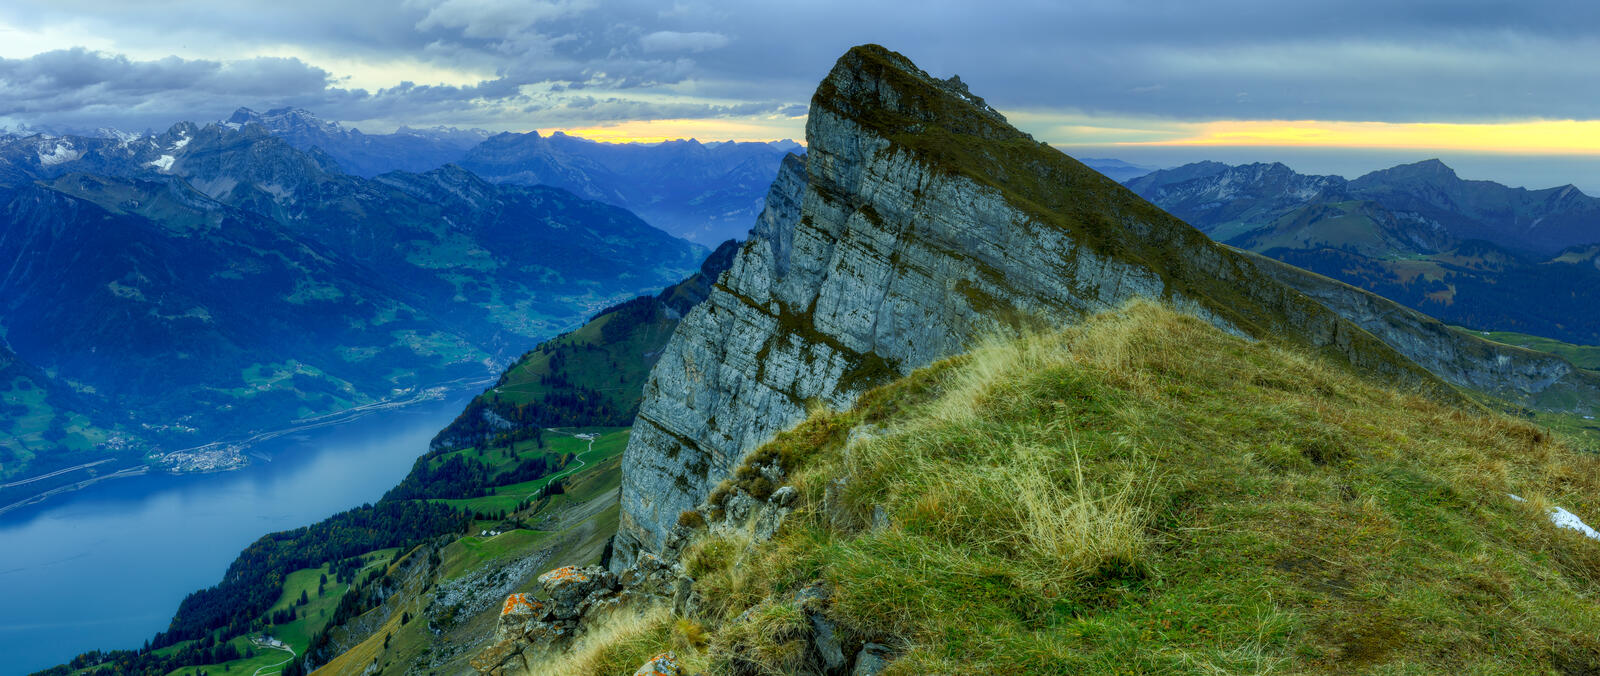 Обои Швейцария Аппенцелль Альпы на рабочий стол